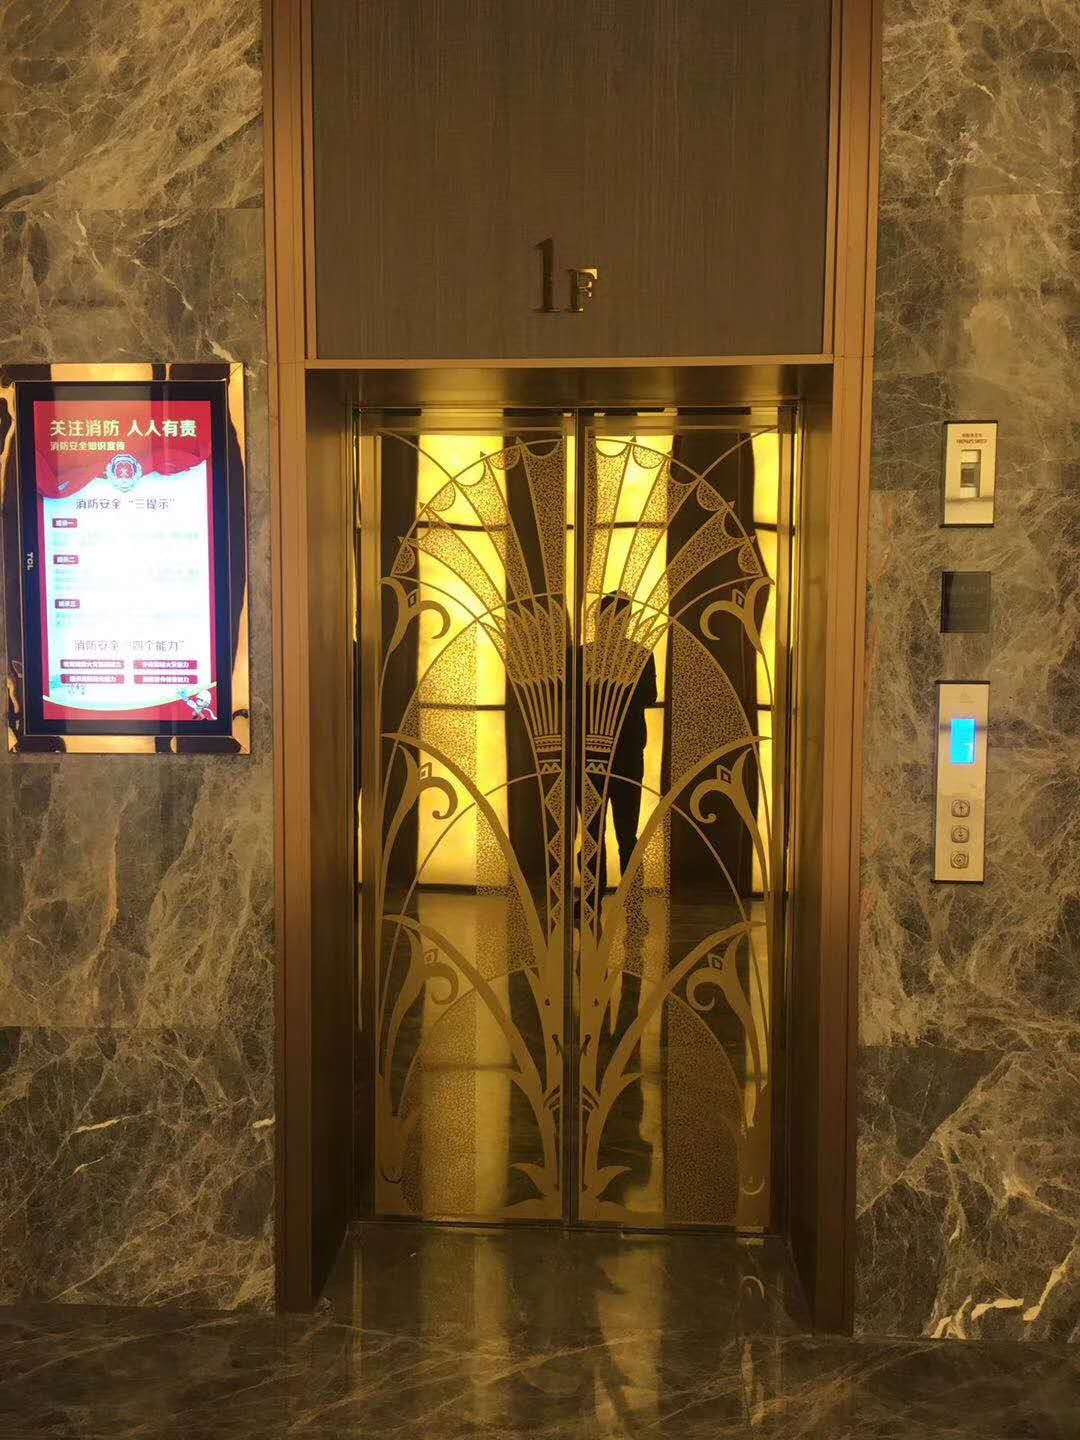 乘客电梯 (5)